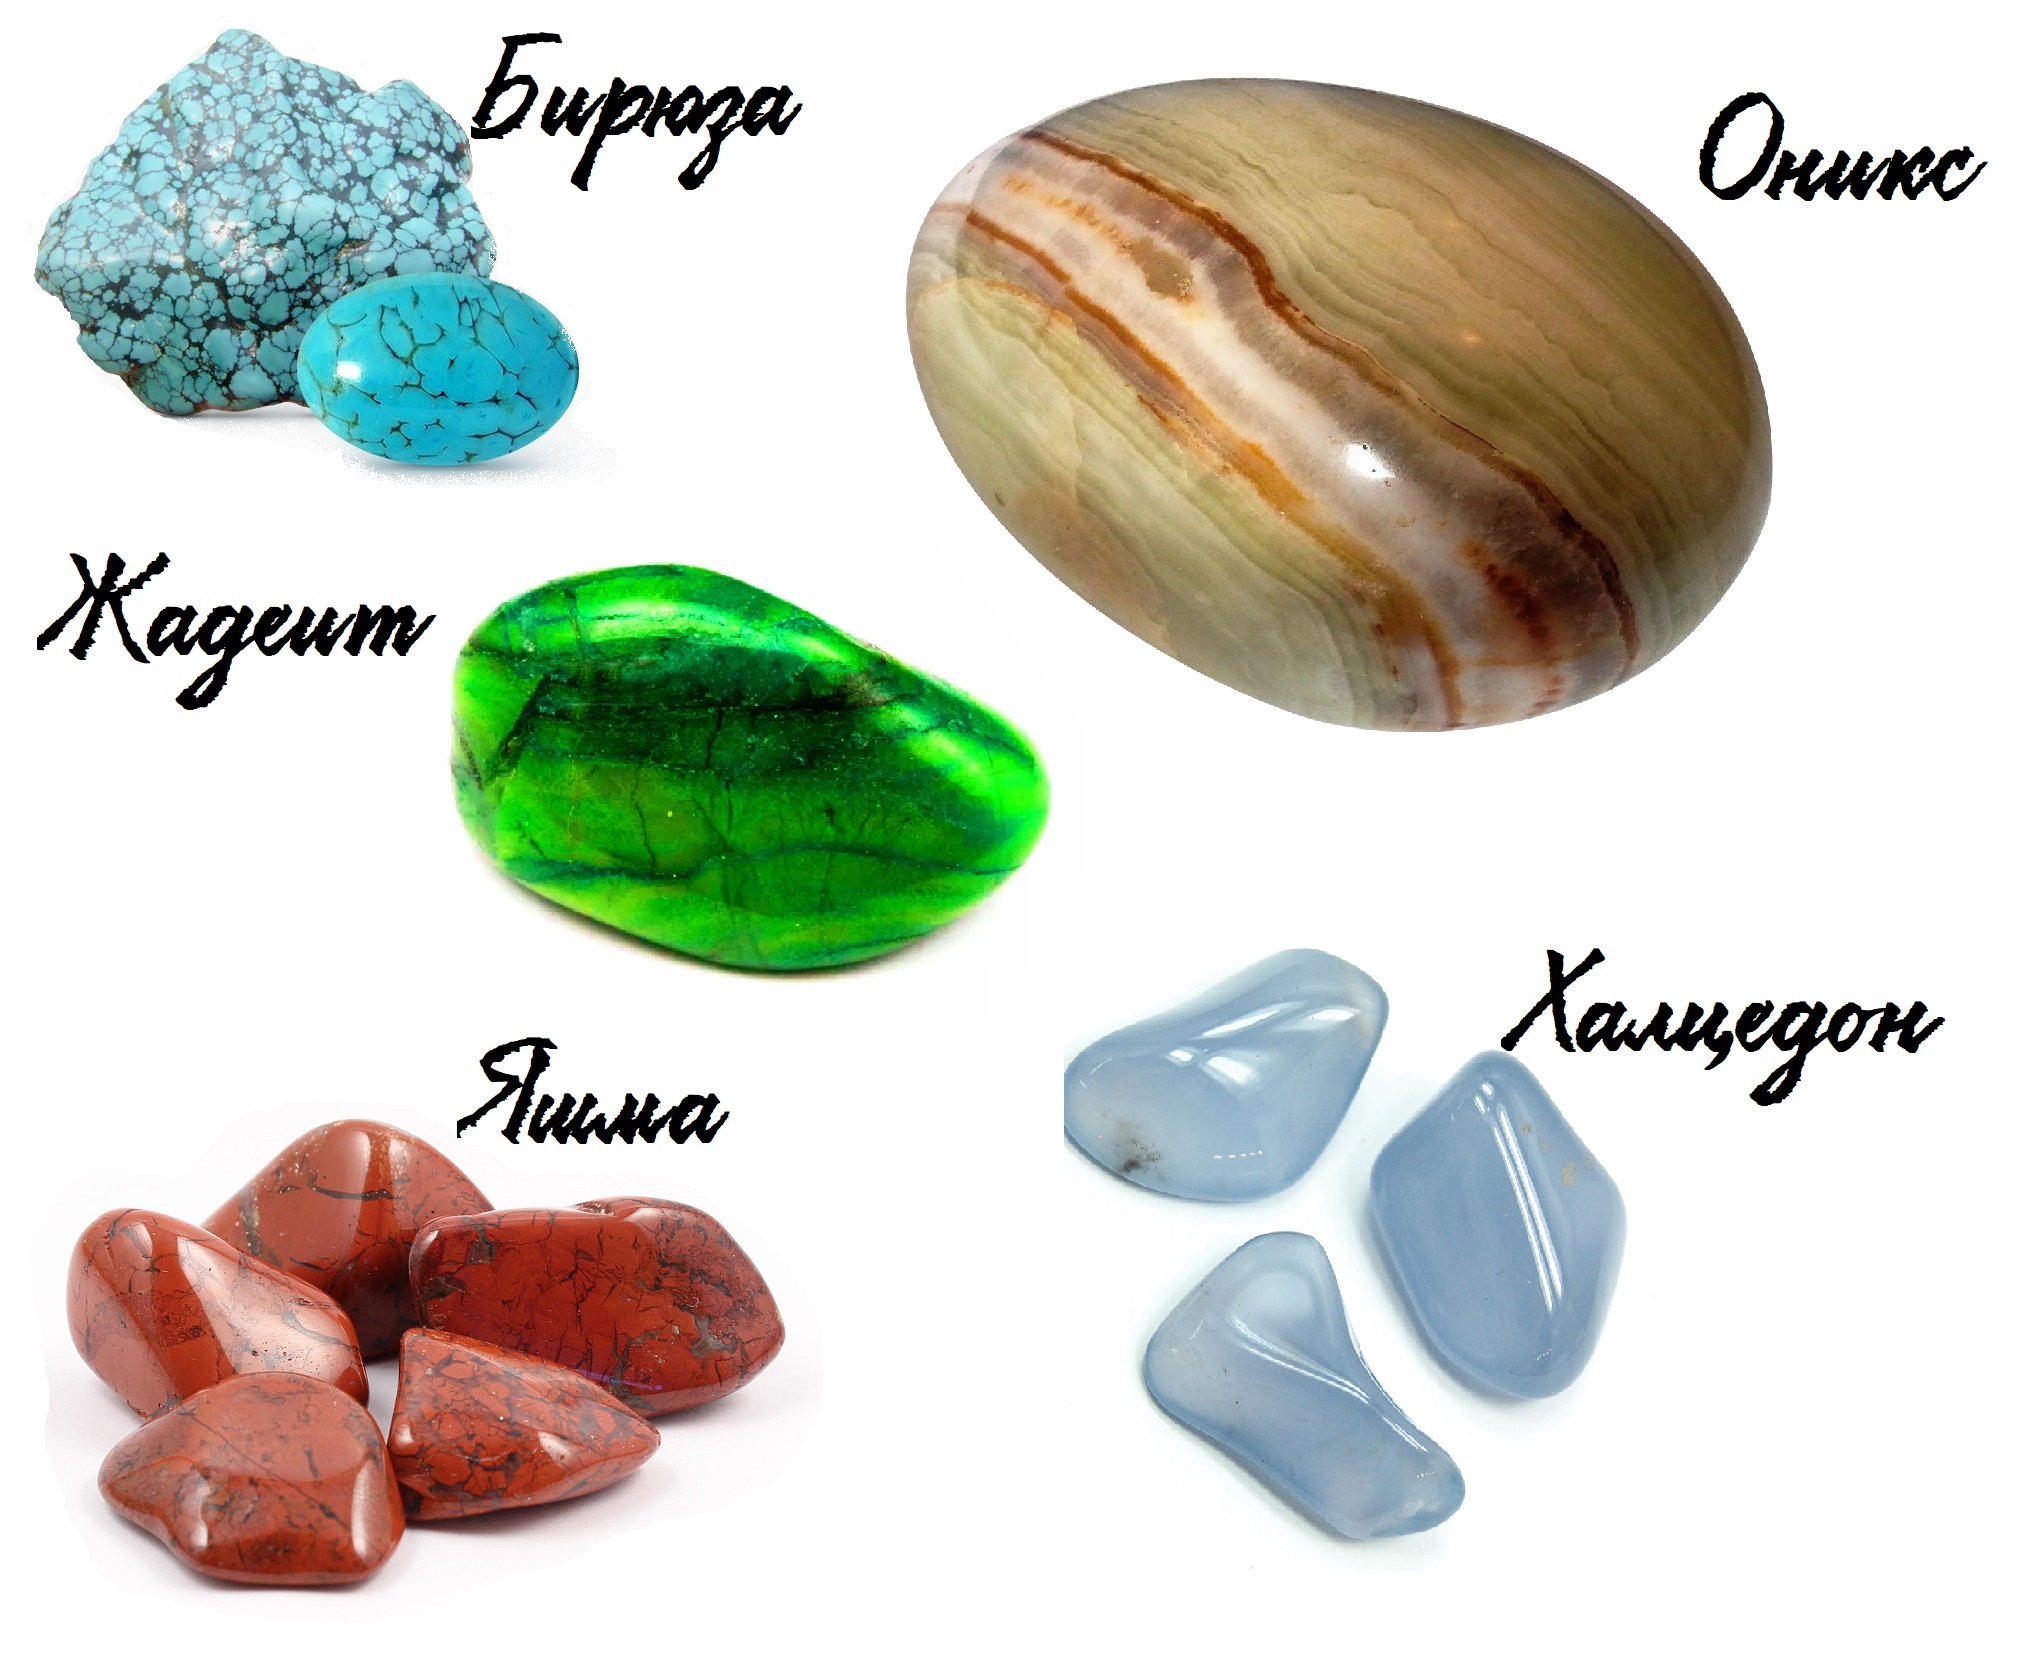 камни по знакам зодиака таблица фото